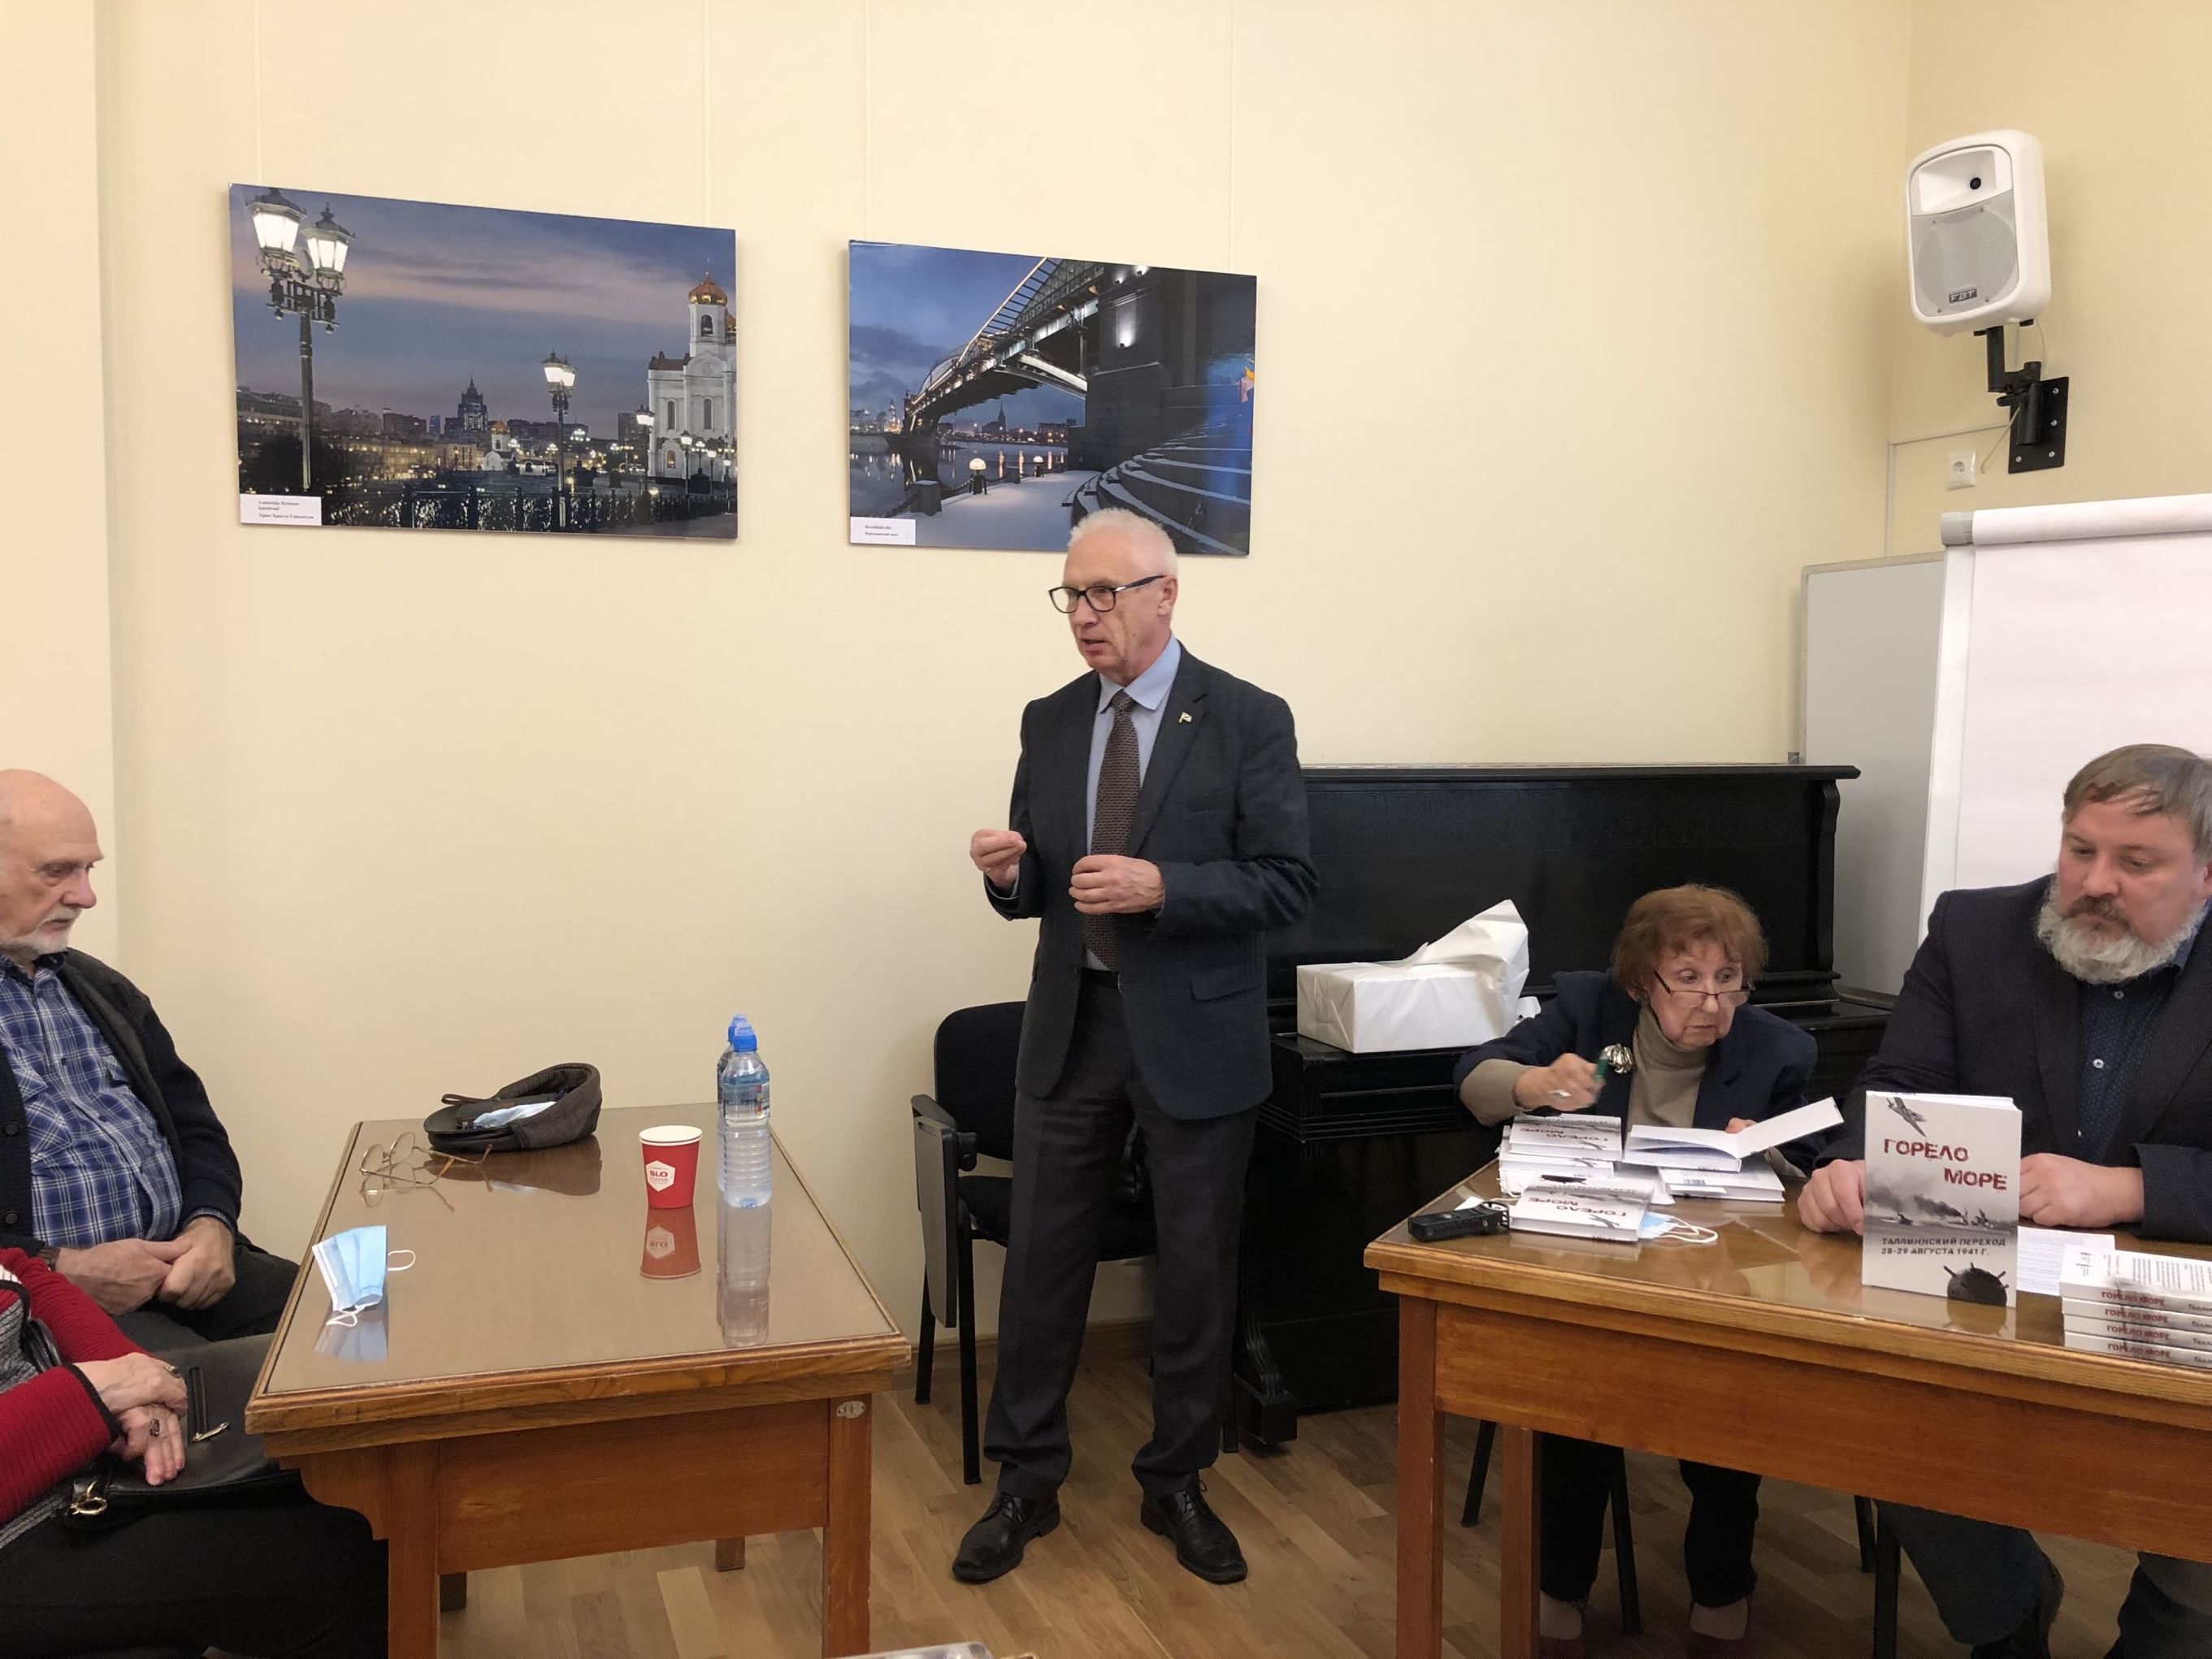 Председатель правления Клуба ветеранов флота Александр Караулов выступает на презентации книги "Горело море"